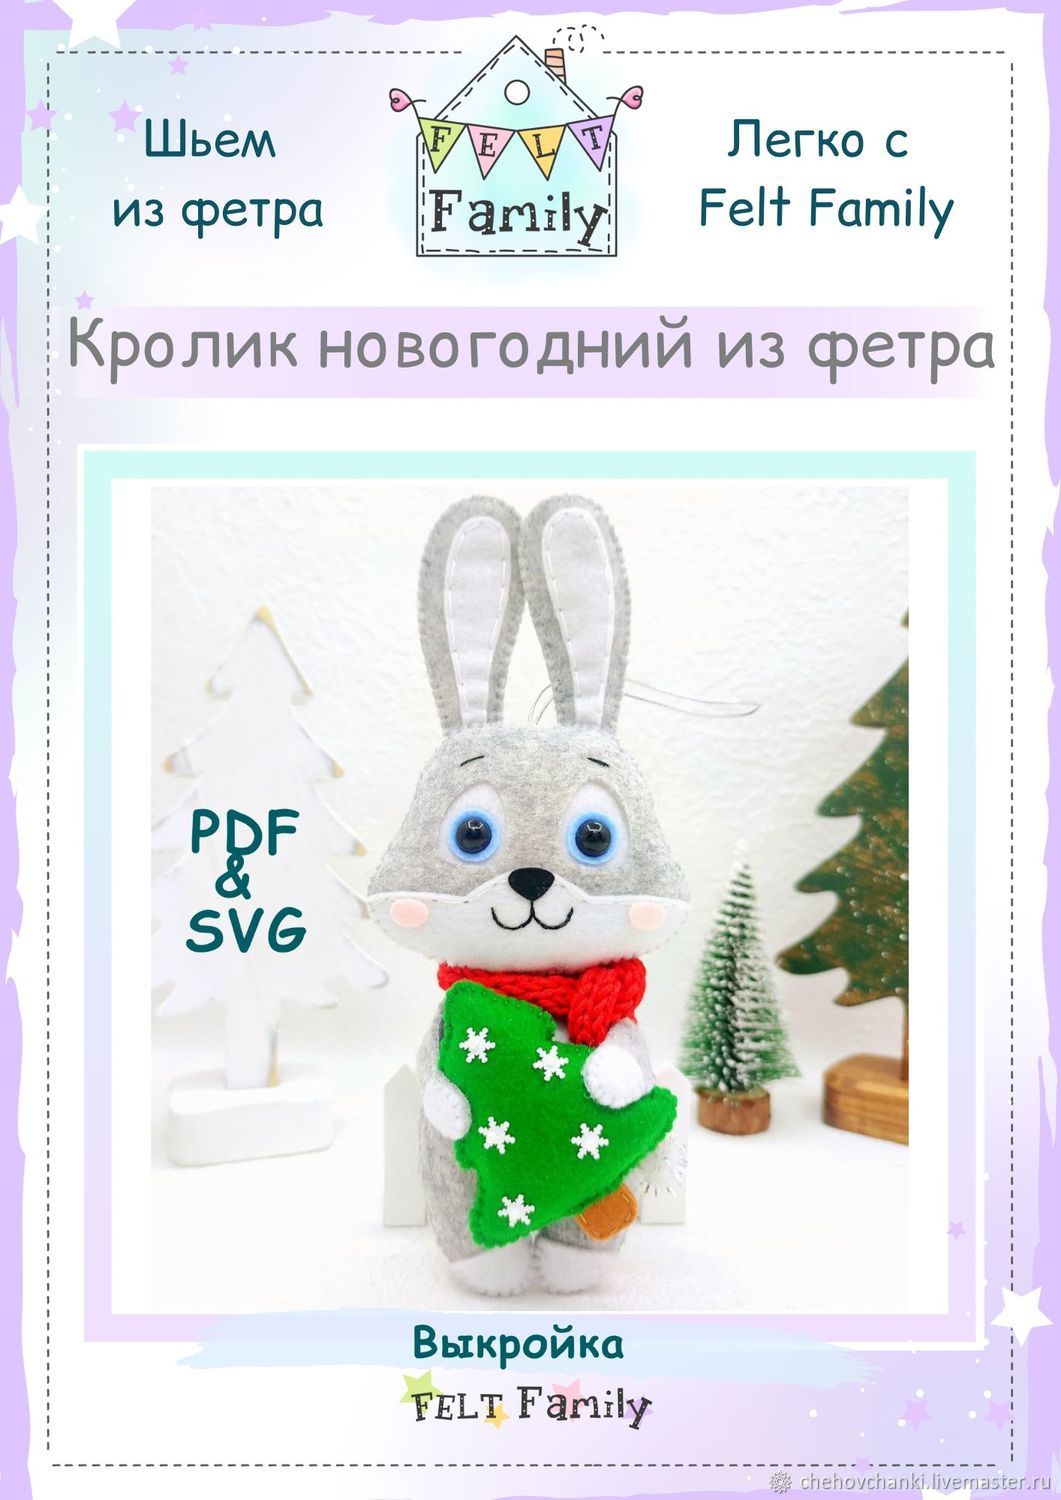 Все для рукоделия Киев, купить товары для handmade в интернет магазине «Пуговичок»